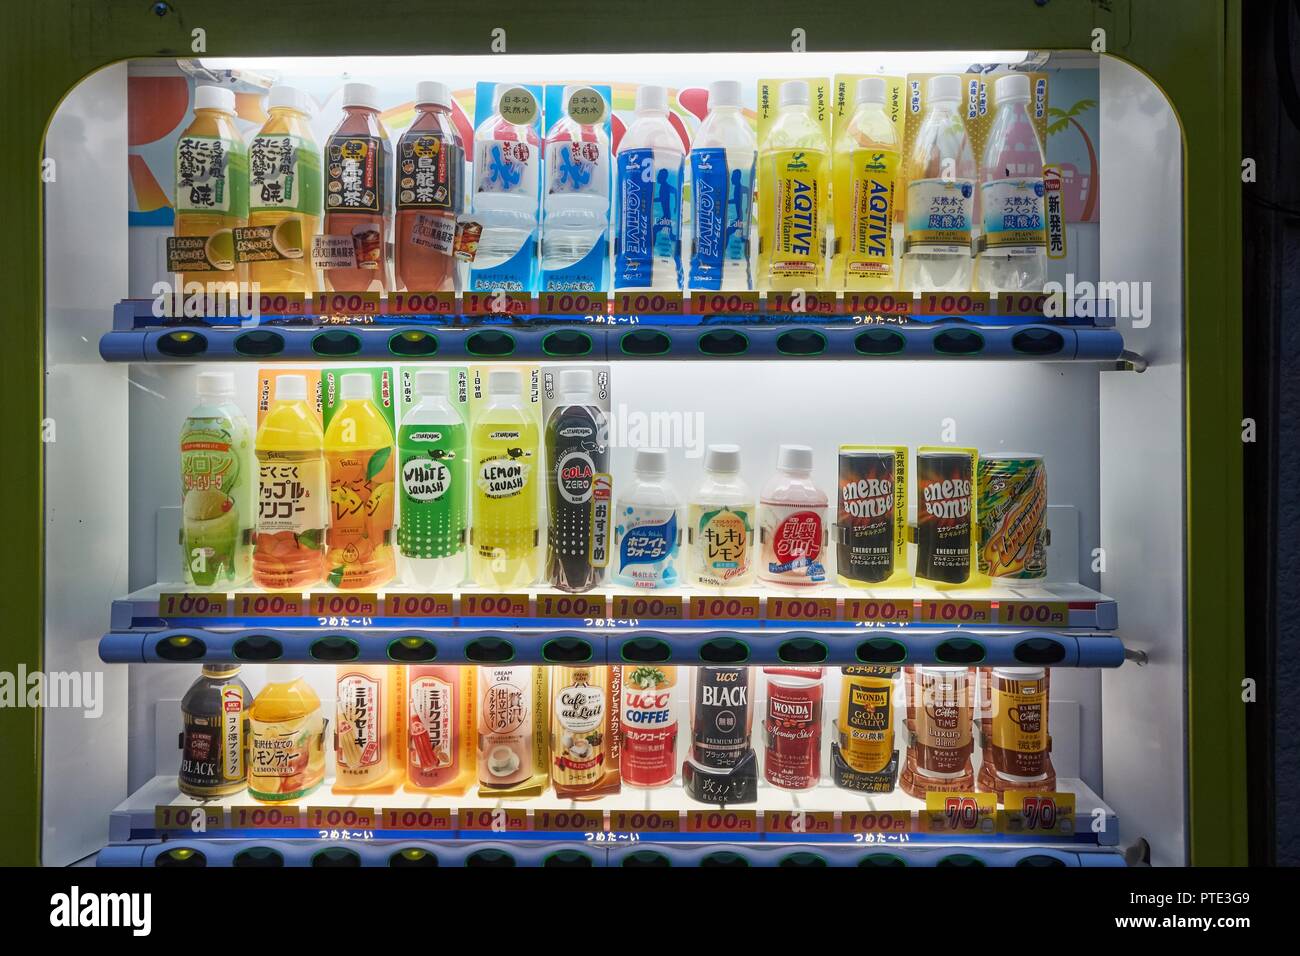 Japanese Vending Machine Stock Photo